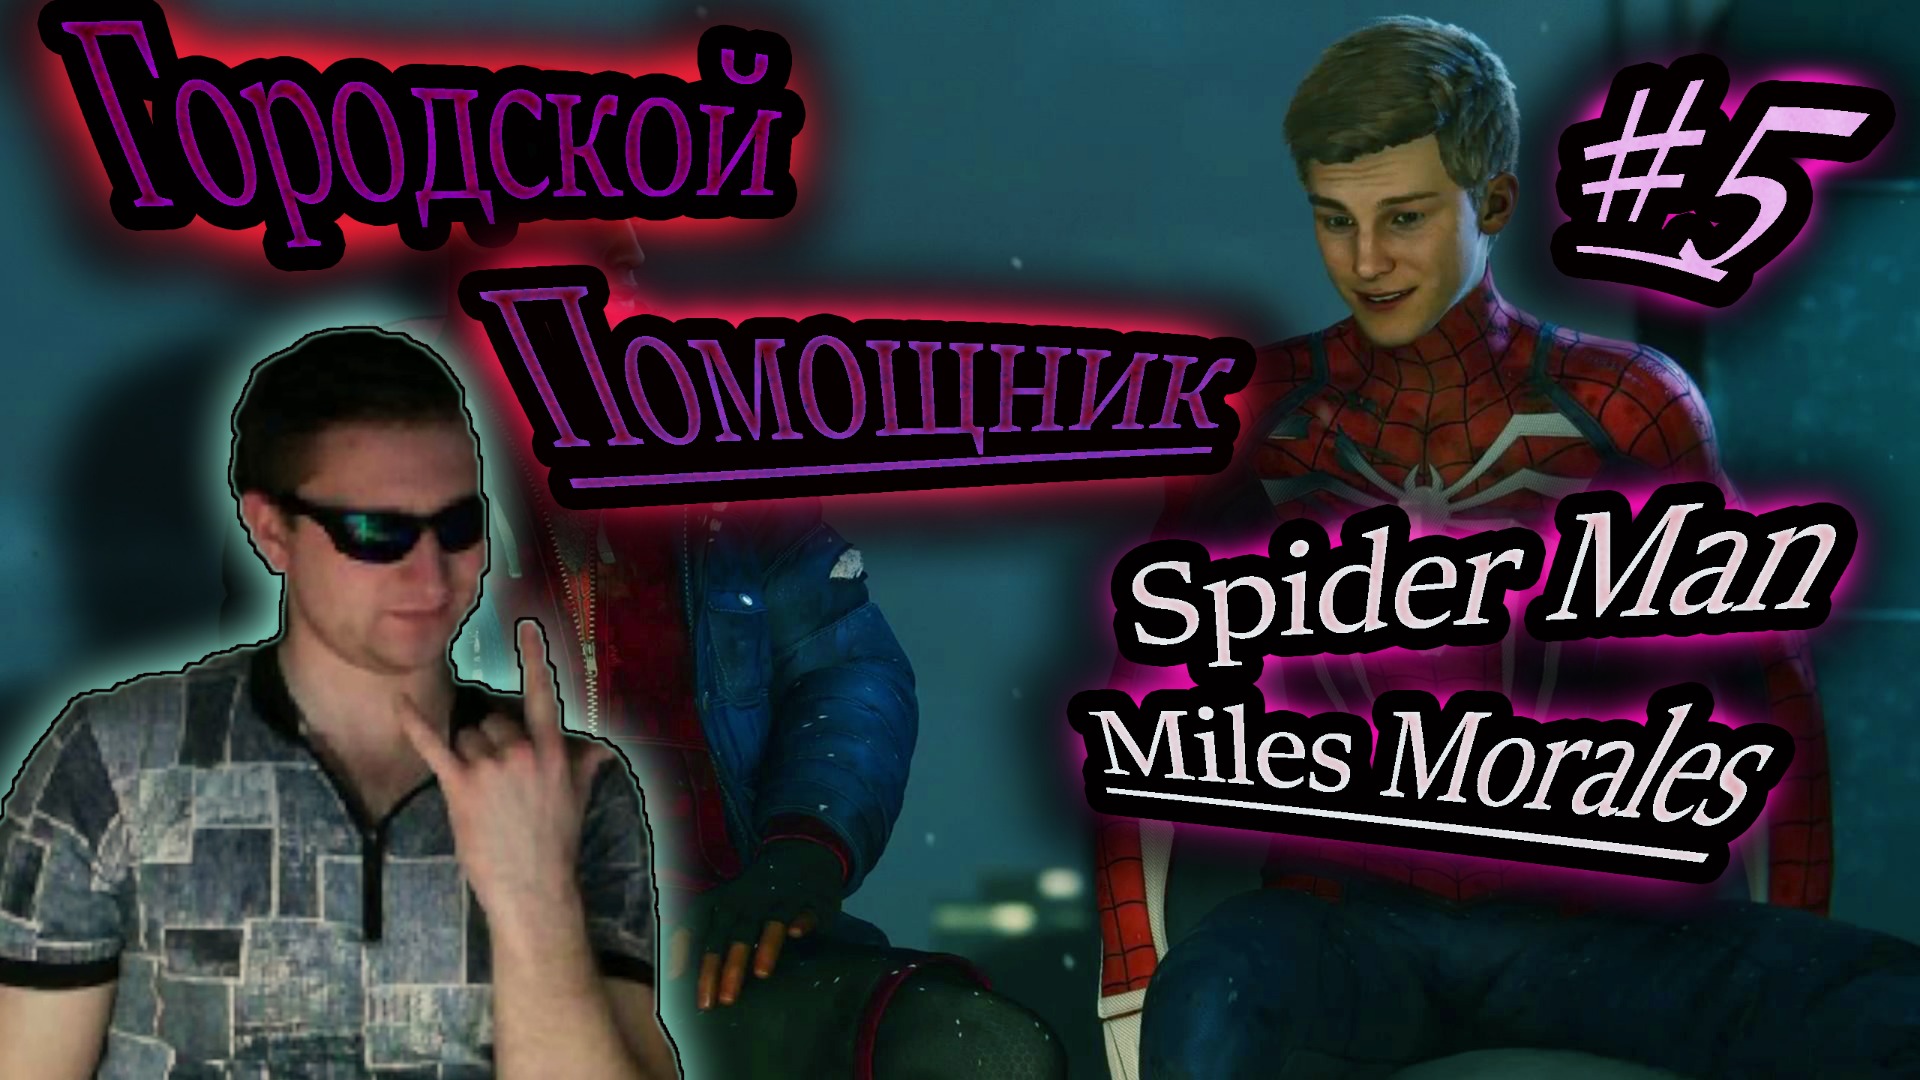 ГОРОДСКОЙ ПОМОЩНИК ✔ Spider Man: Miles Morales #5